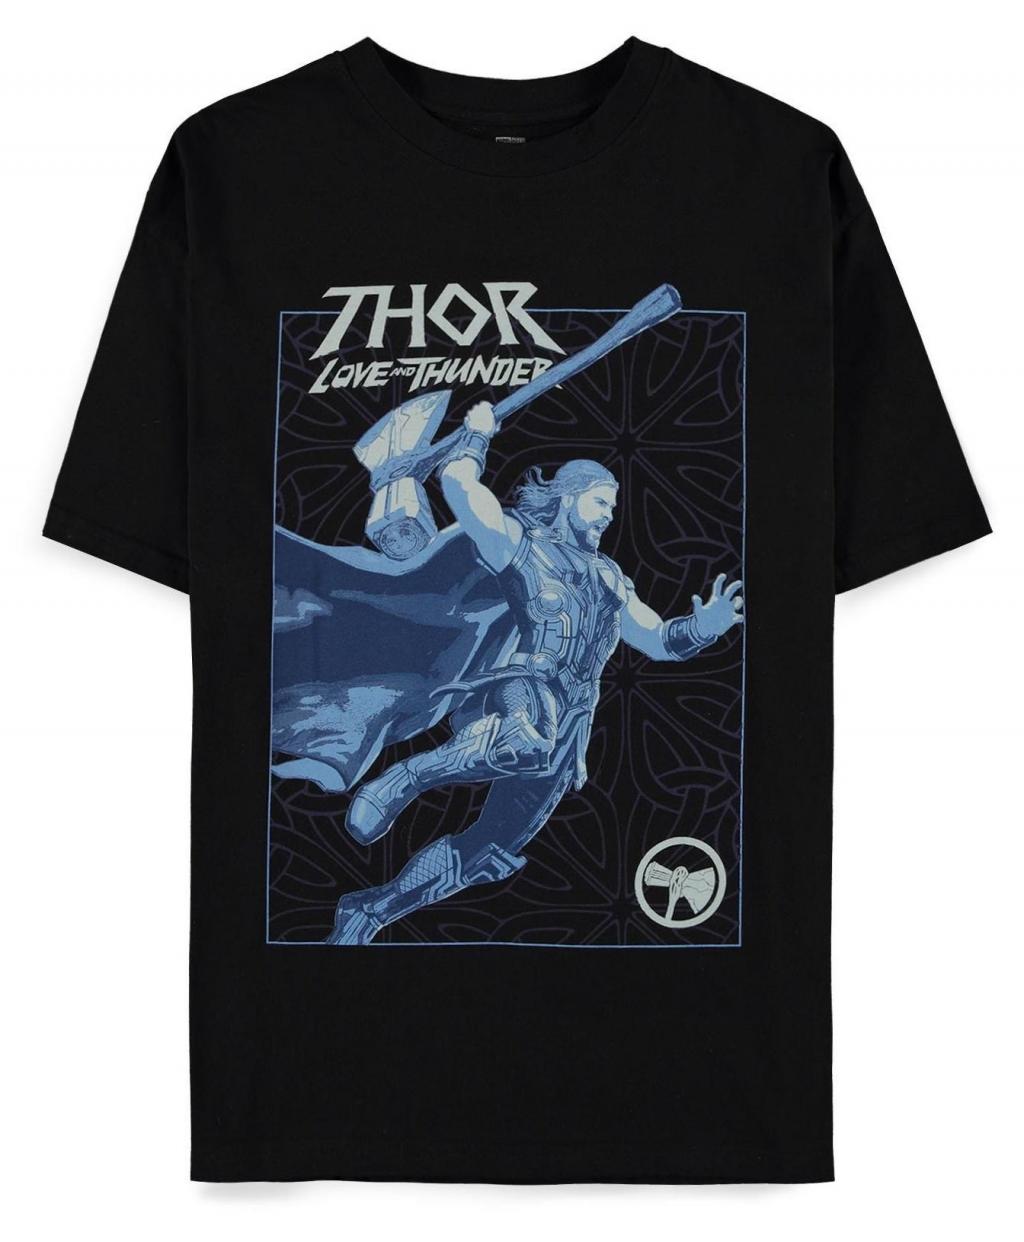 MARVEL - Thor: Love and Thunder - Oversized Women's T-Shirt (S)